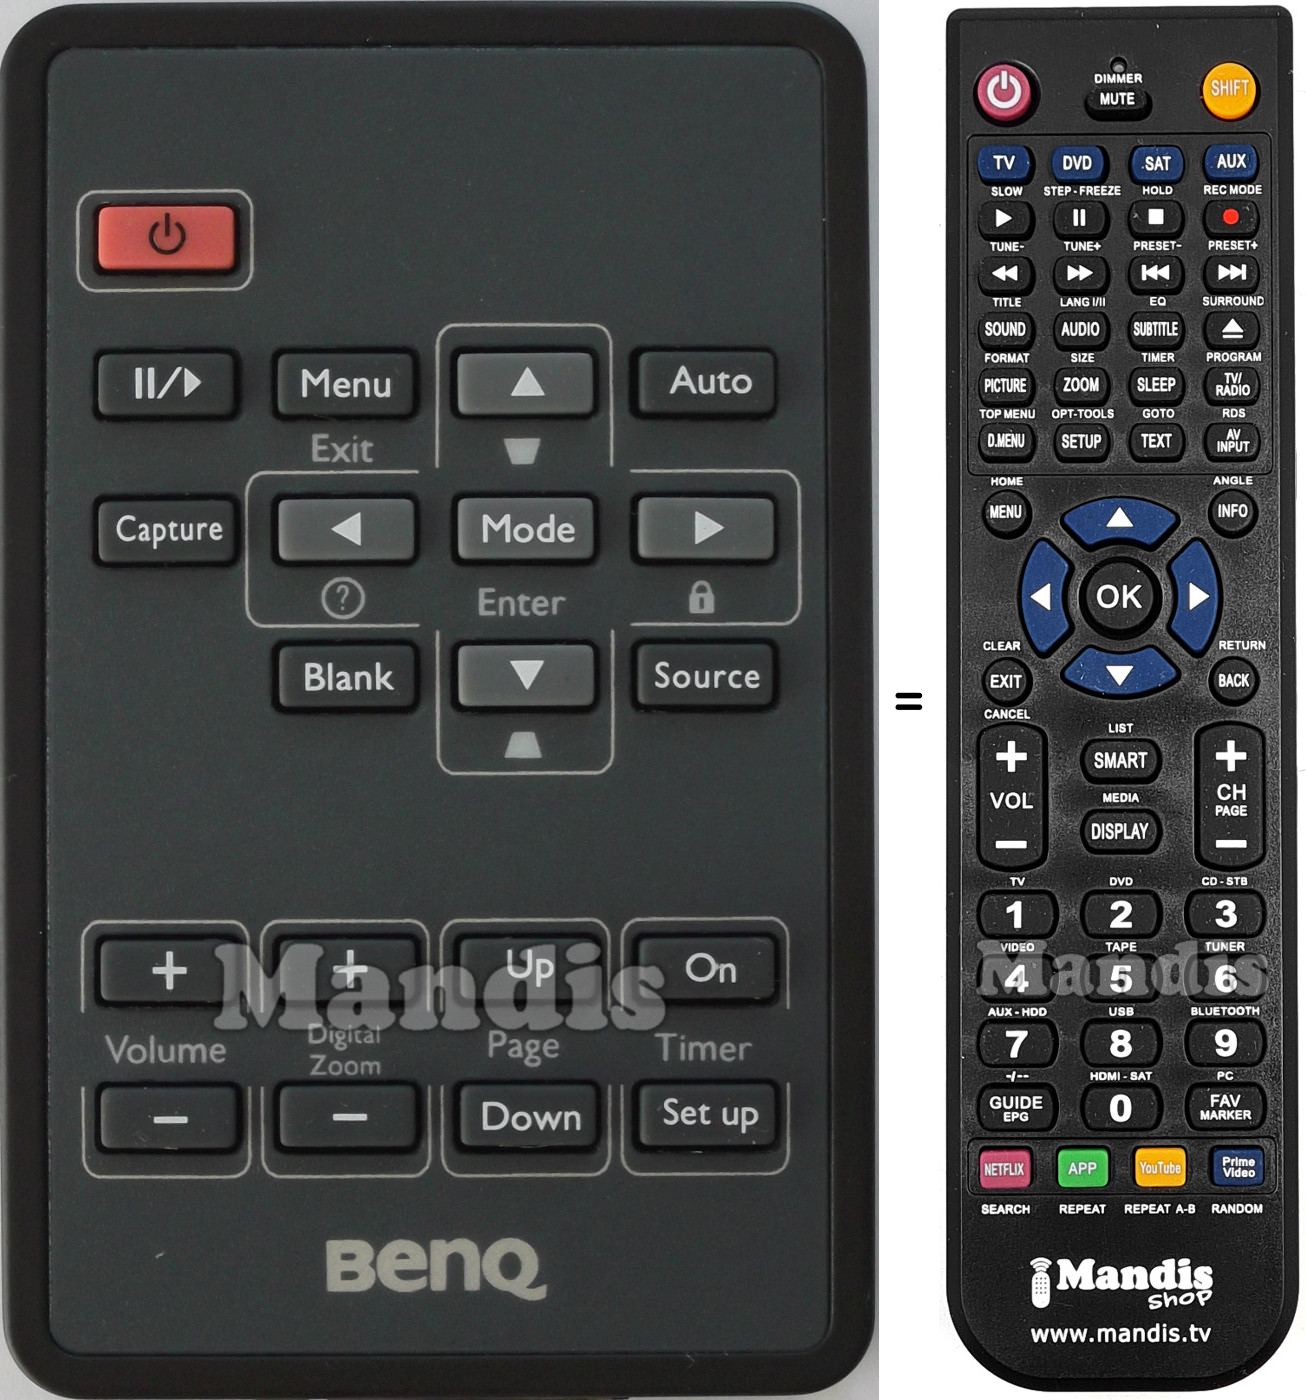 Télécommande équivalente Benq BENQ001